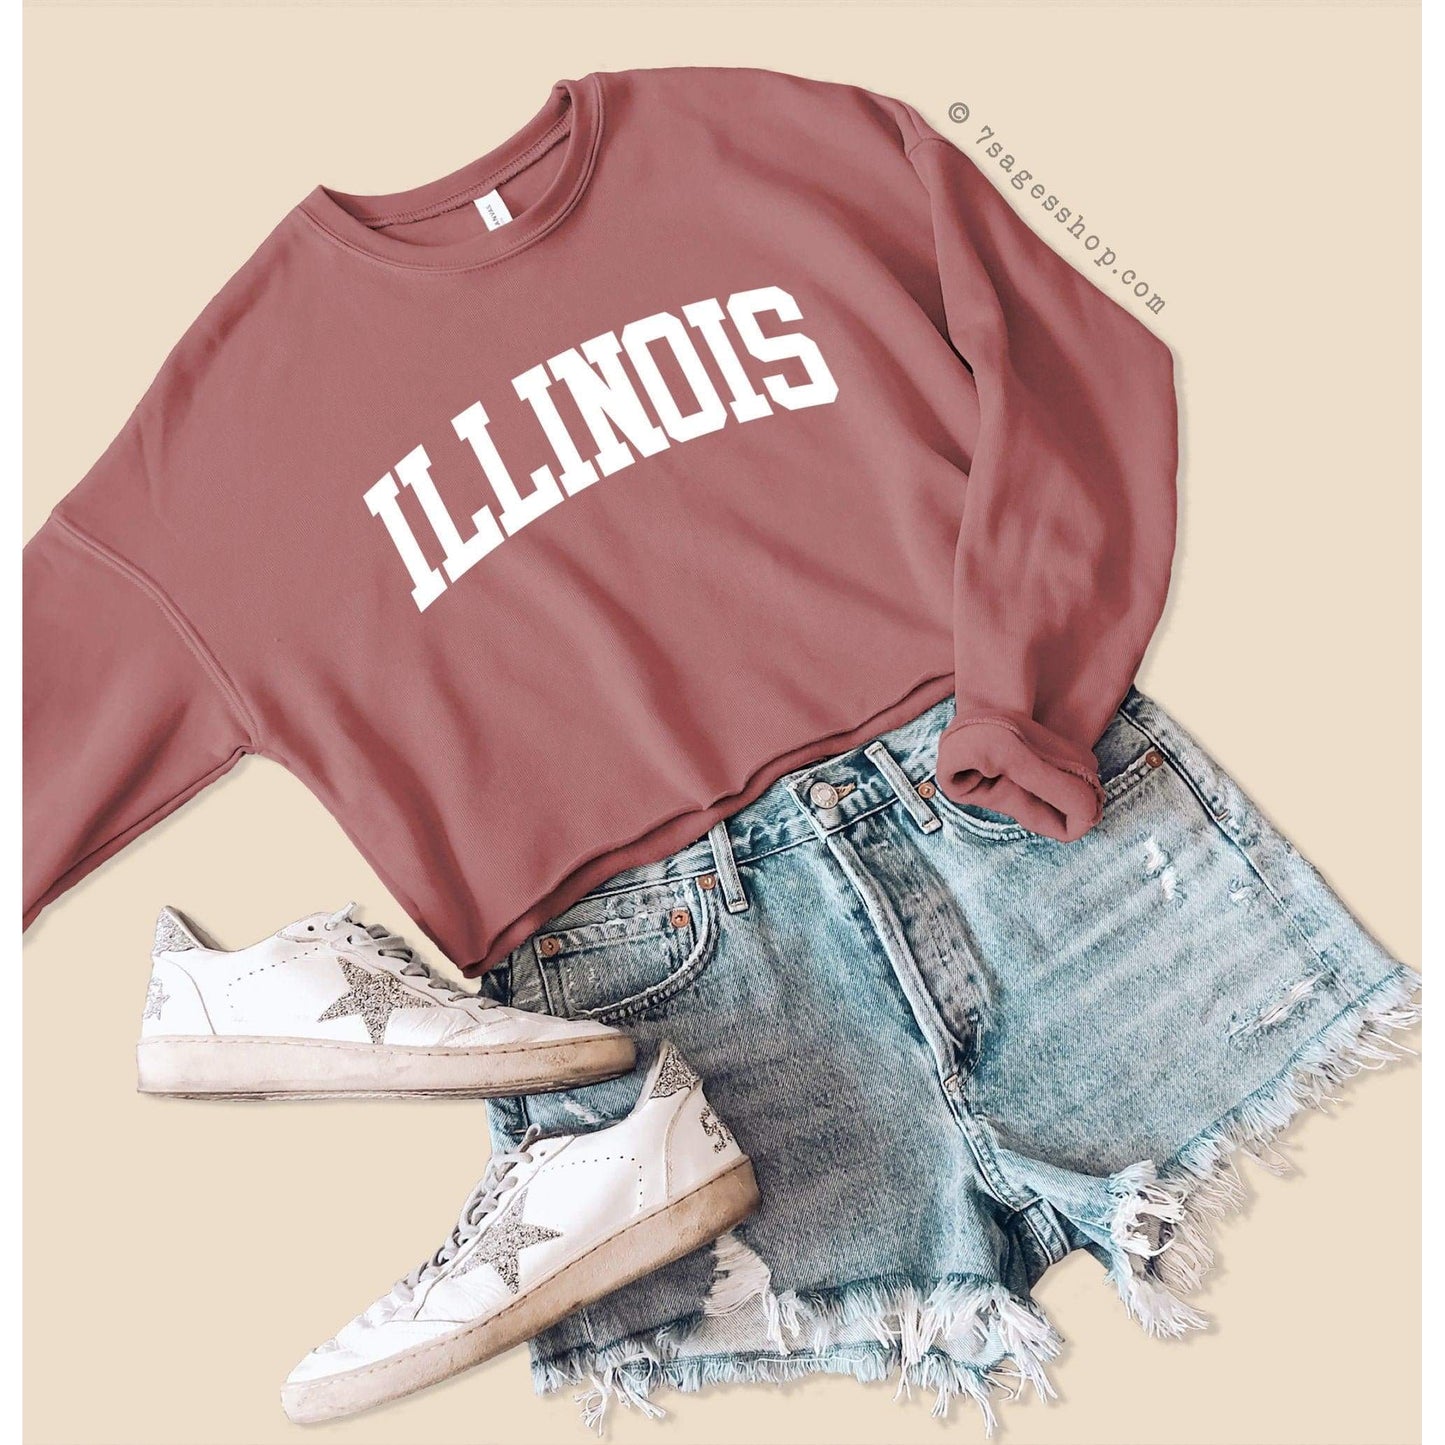 Illinois Sweatshirt - Illinois Cropped Sweatshirt - University of Illinois Shirts - University of Illinois Crop Top - Fleece Sweatshirt